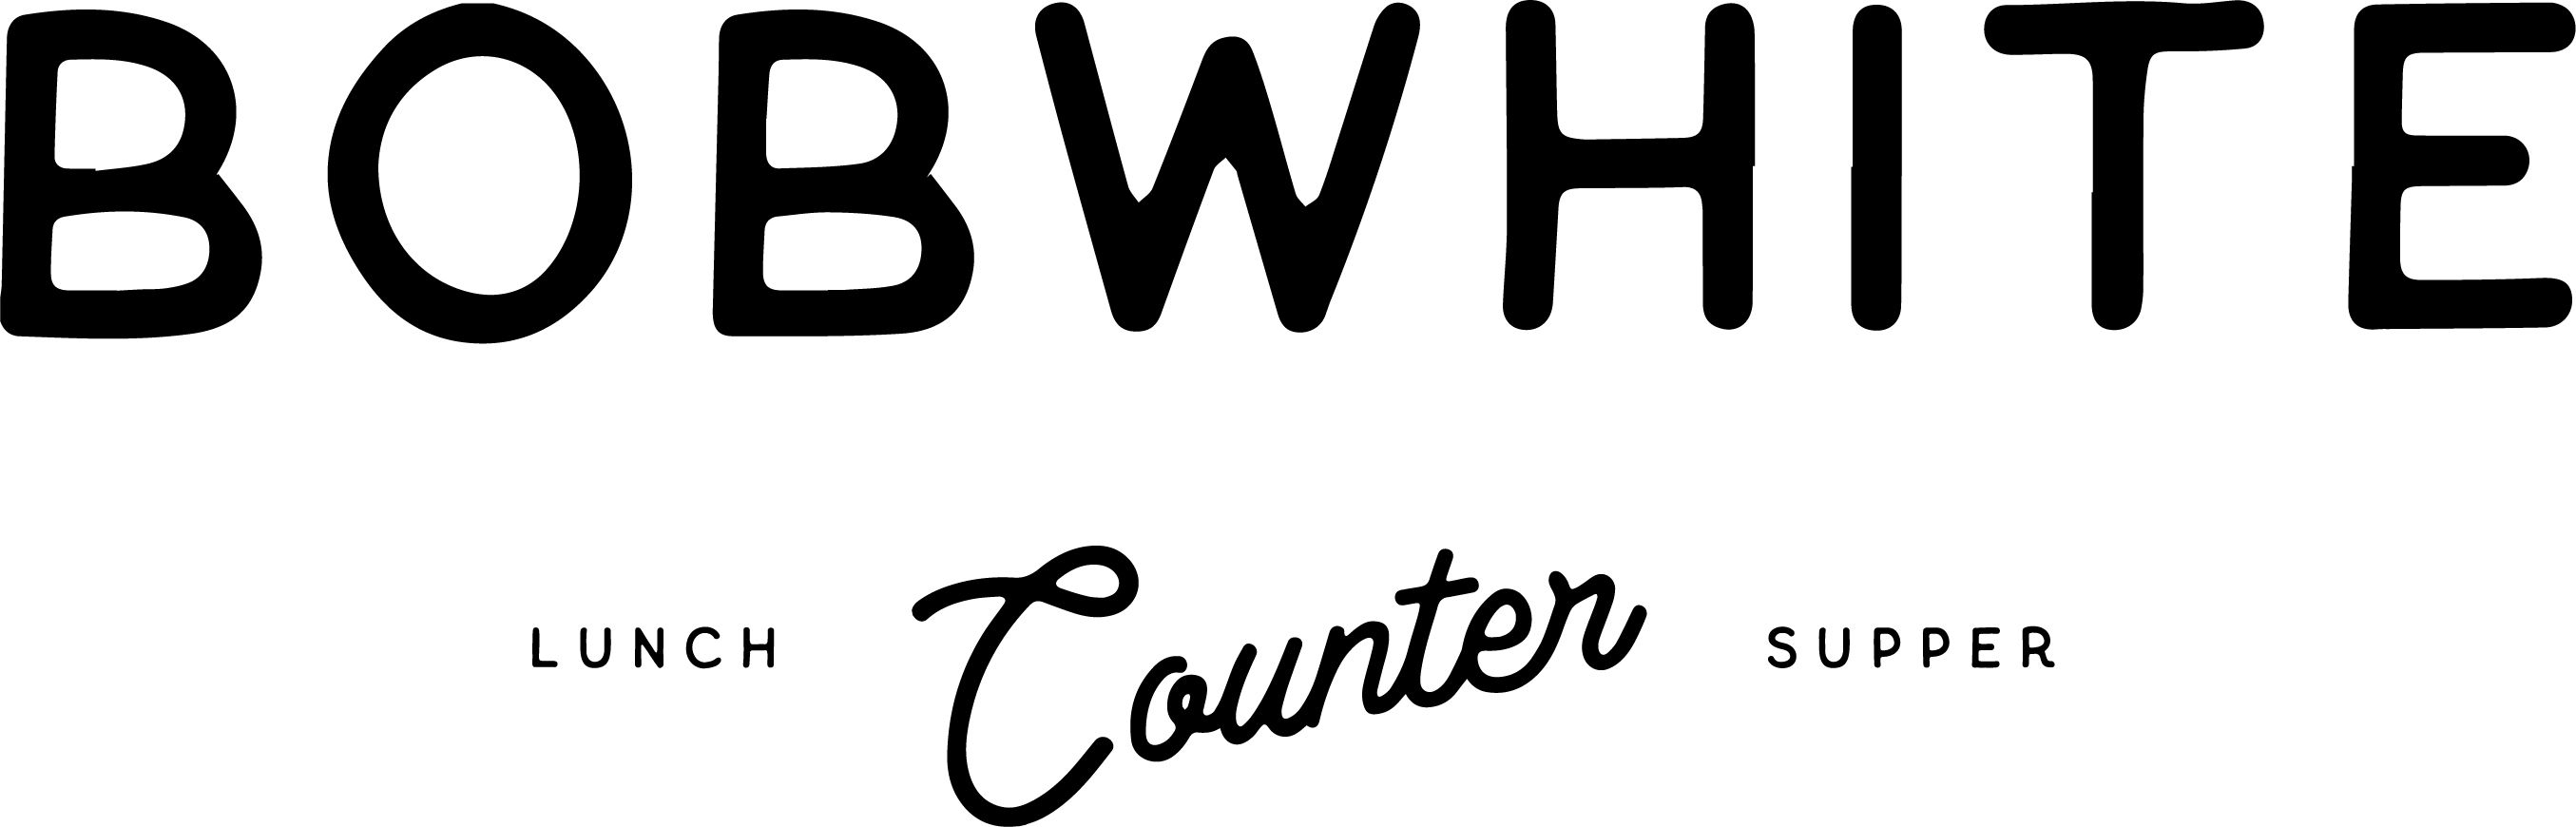 Bobwhite Counter